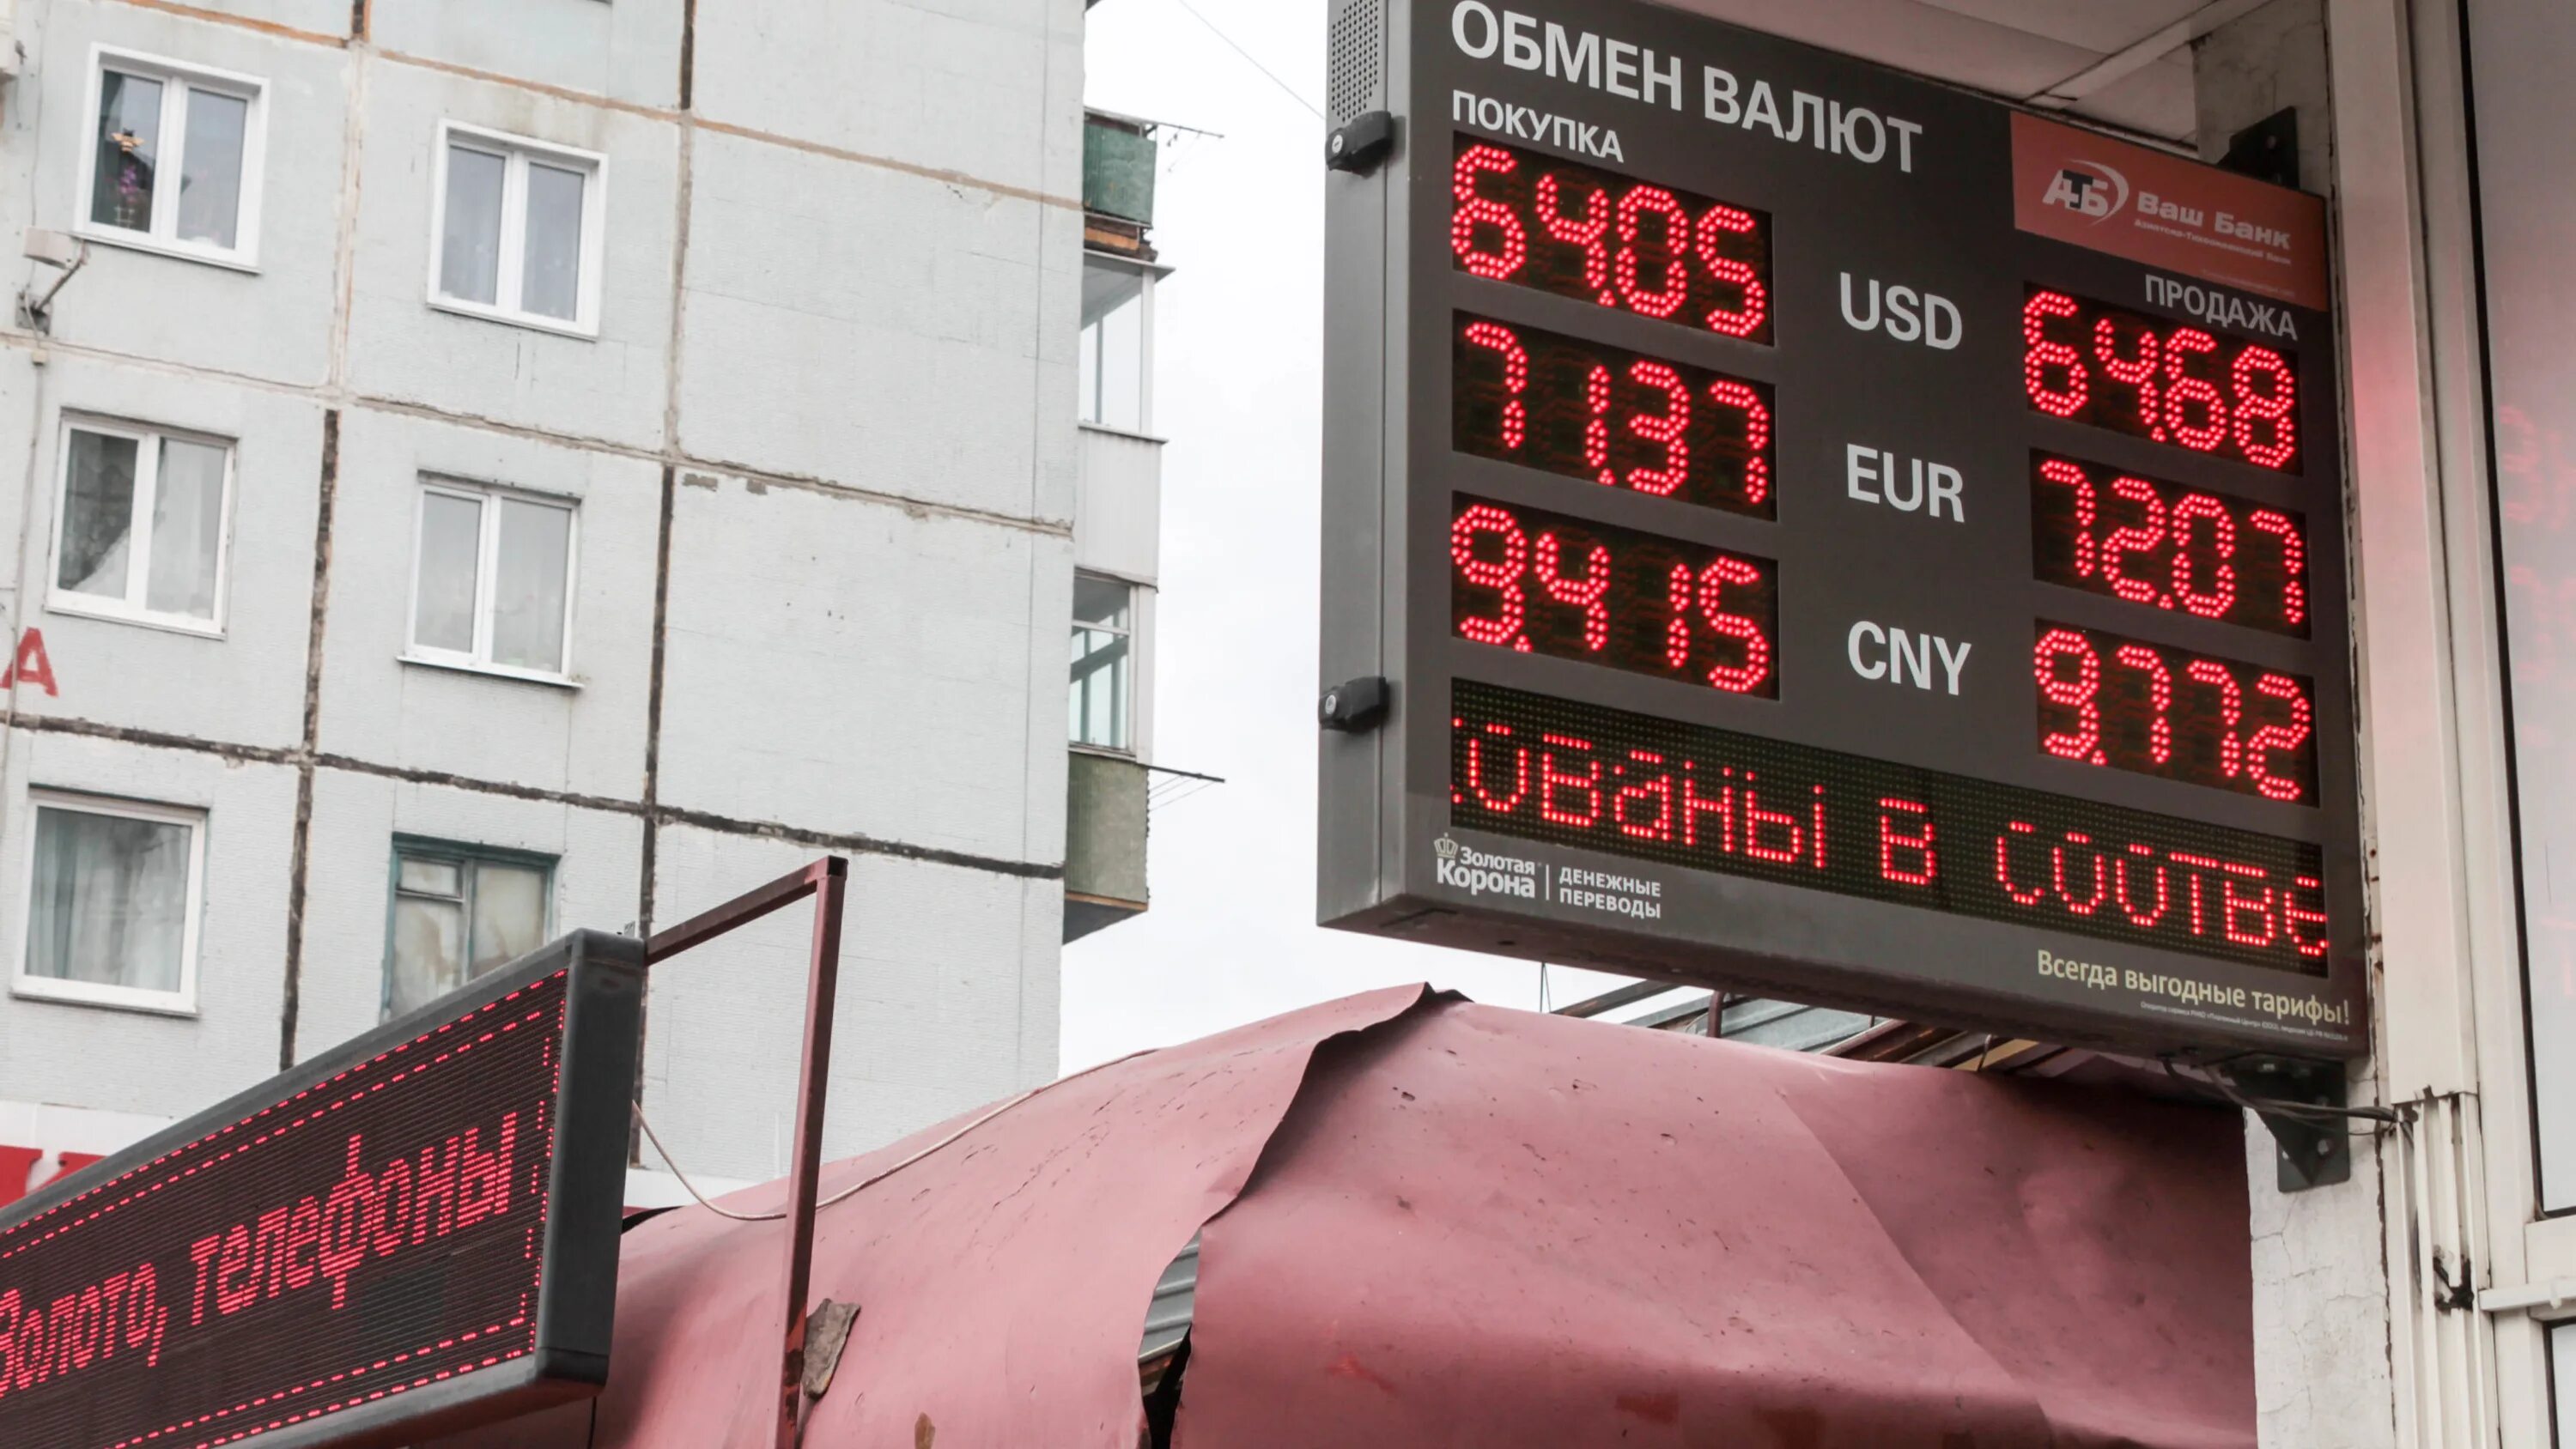 Продажа валюты гражданам. Обмен валюты. Новости про валюту. Курс рубля. Покупка доллара.